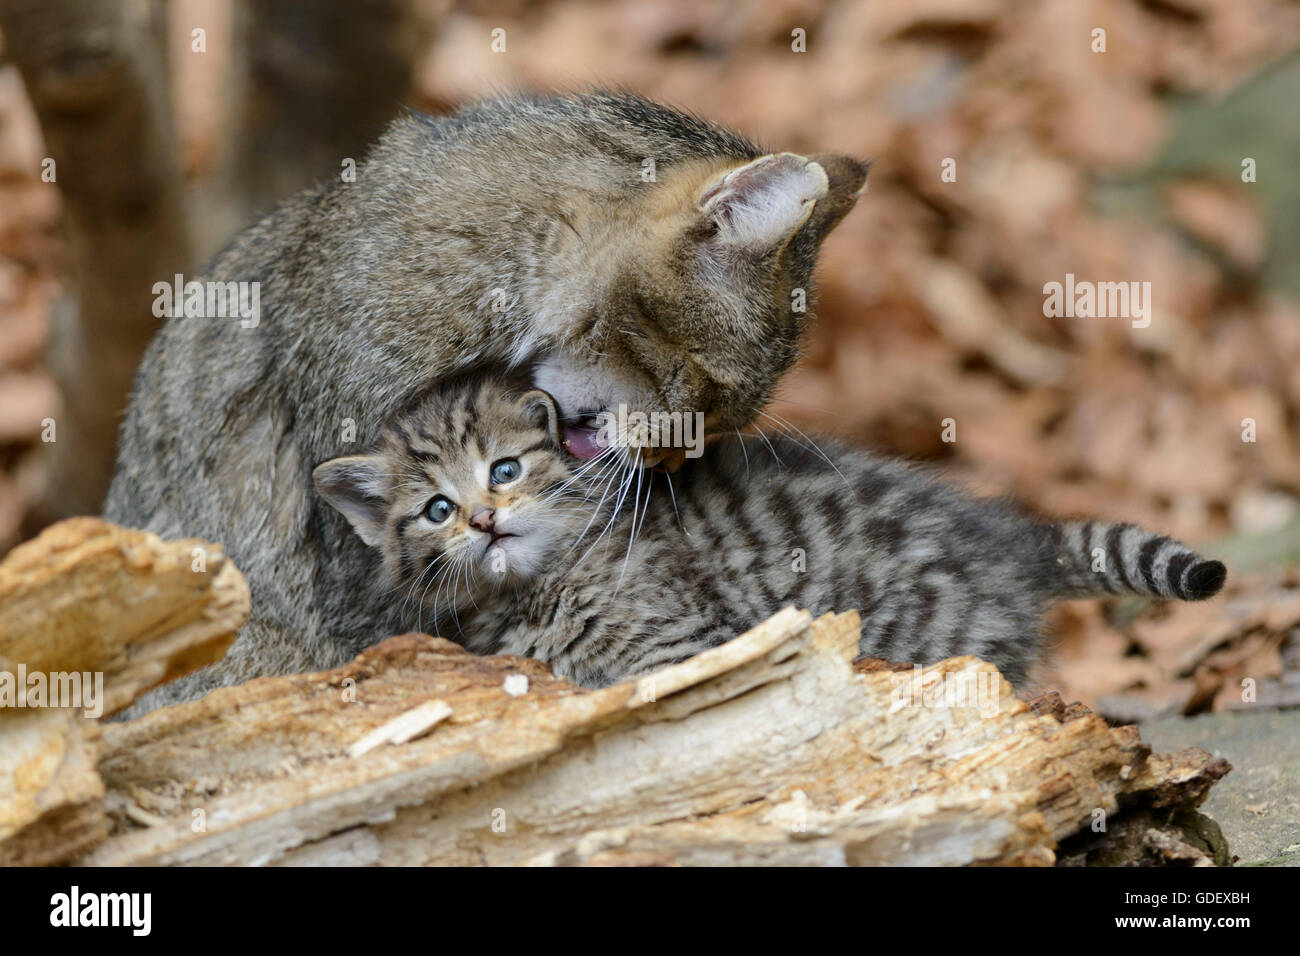 Comune gatto selvatico con un gattino, Parco Nazionale della Foresta Bavarese, Baviera, Germania, Felis silvestris Foto Stock